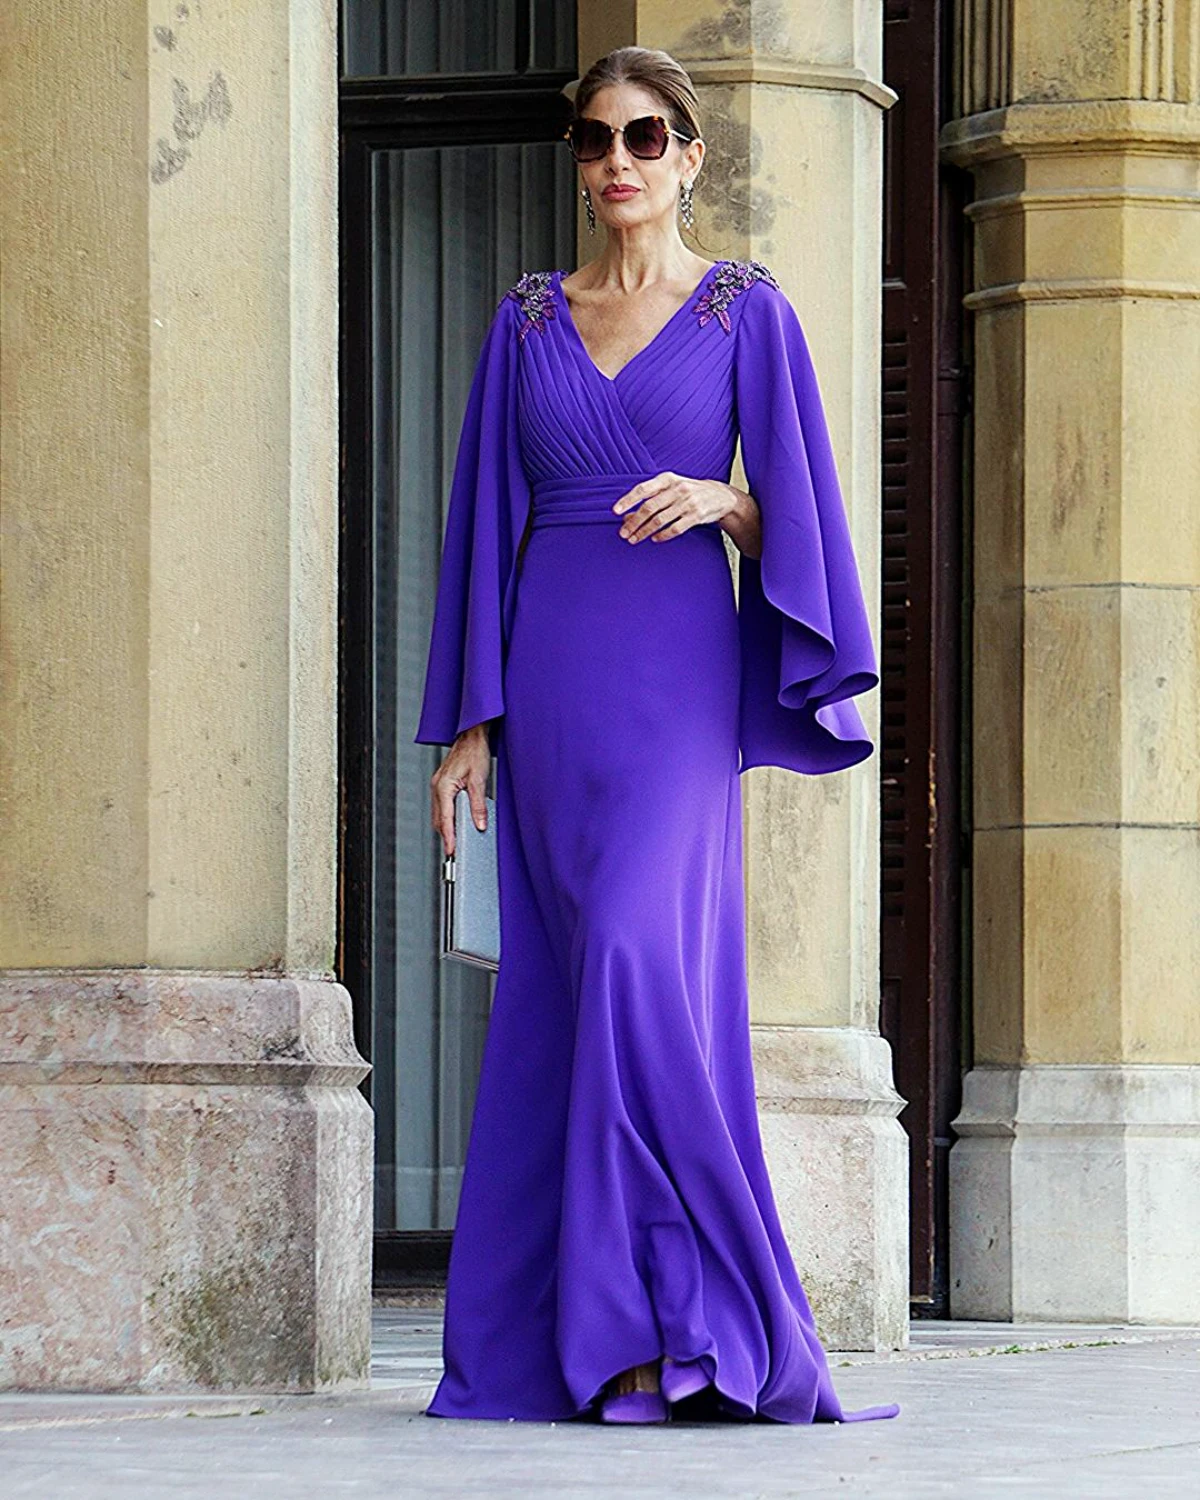 robe longue violette femme 50 ans lunettes